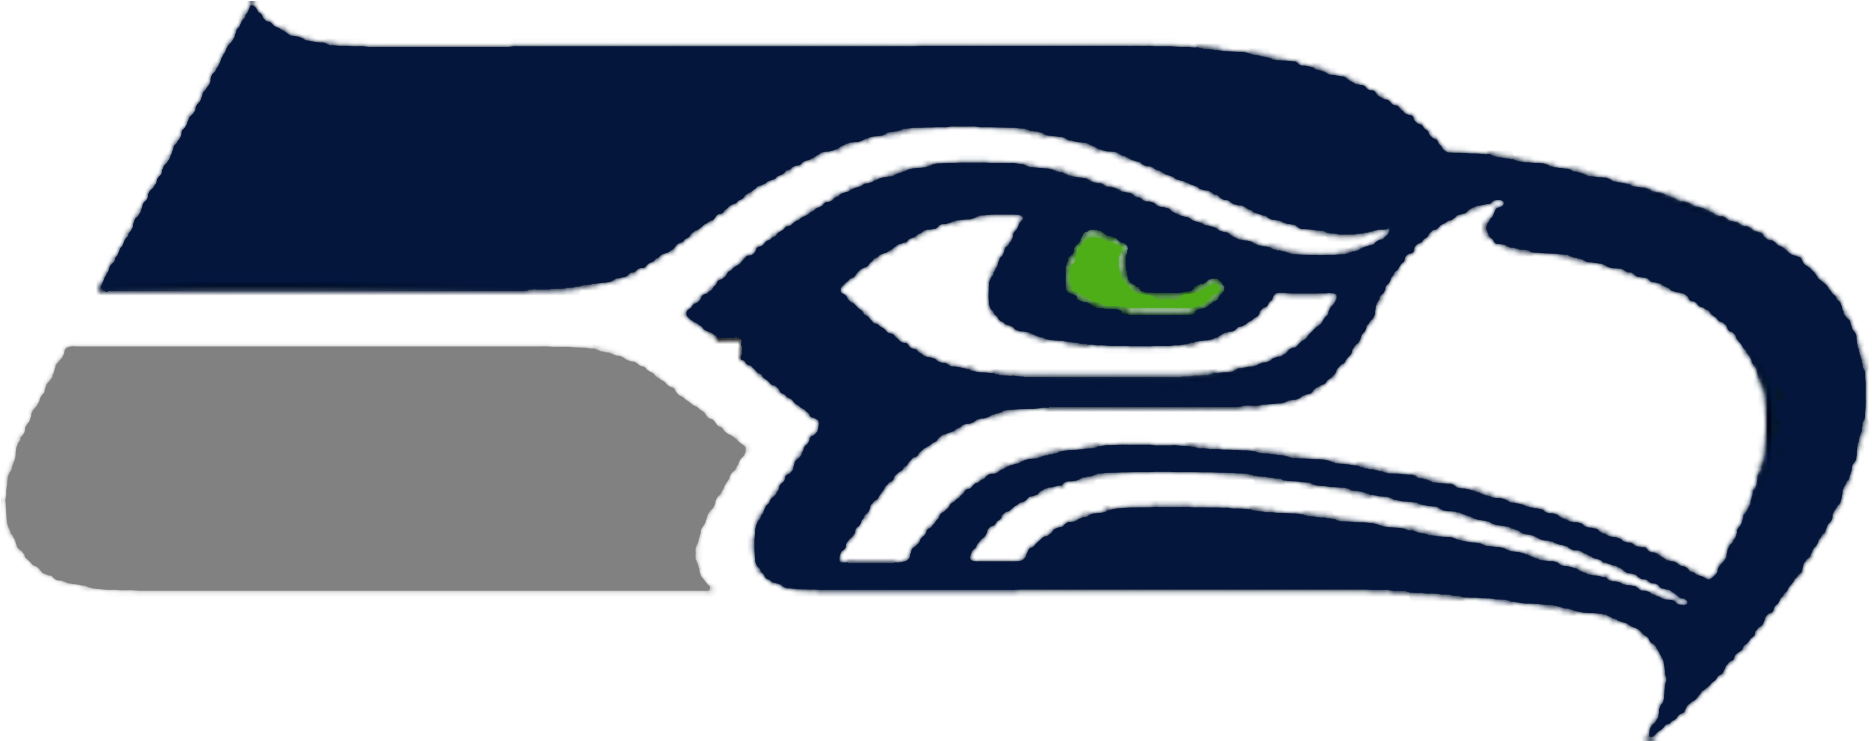 Seattle Seahawks New Logo - Seattle Seahawks Logo 2018 (1871x826)